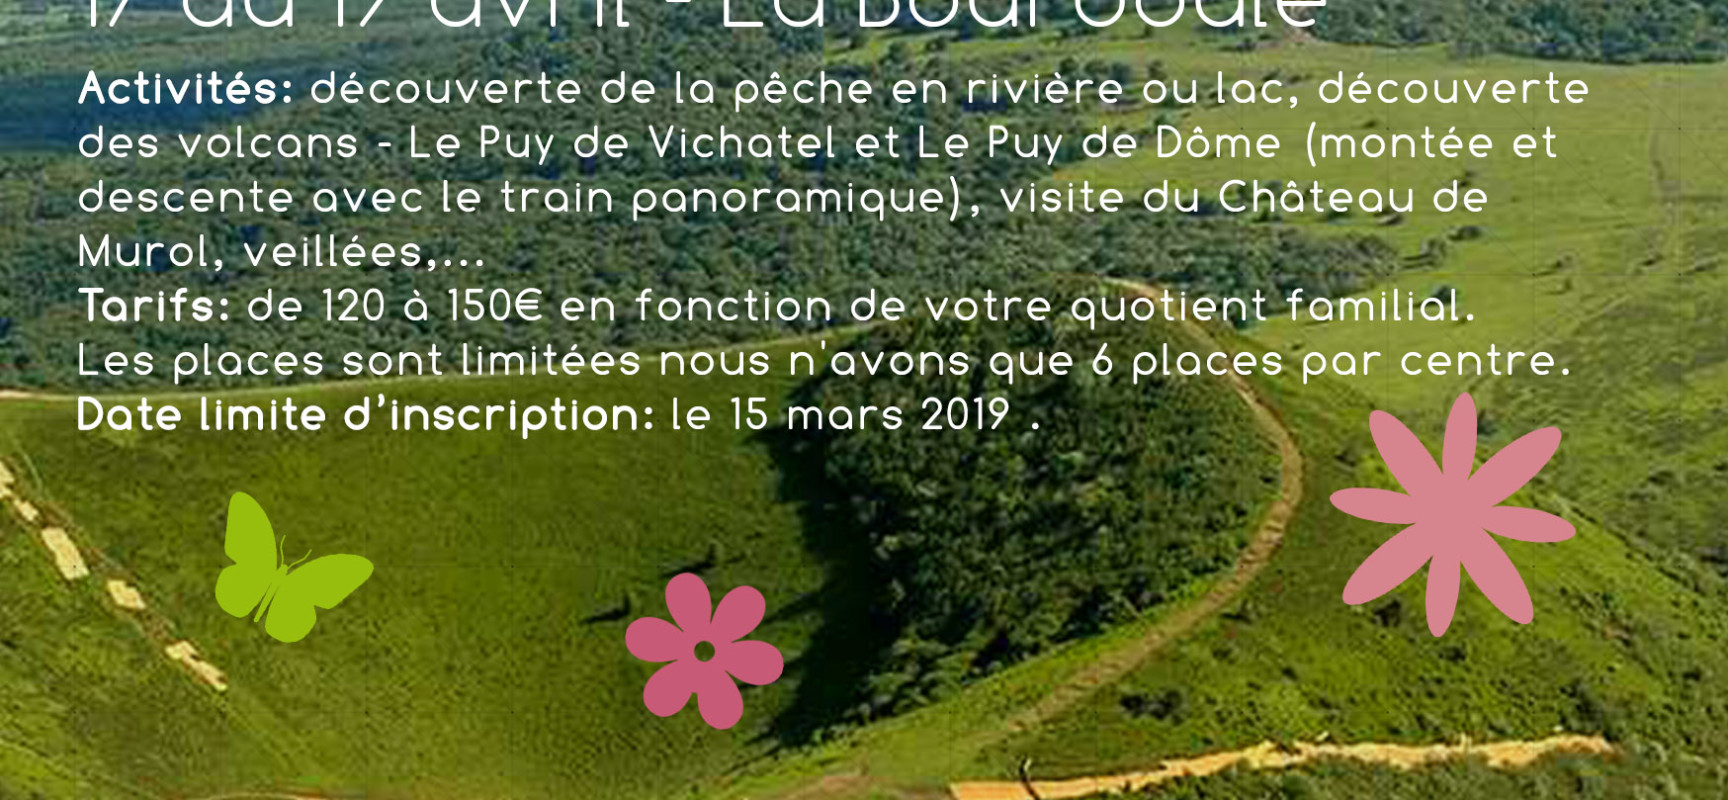 Séjour Nature à la Bourboule du 17 au 19 avril 2019 pour les 4 – 6 ans #Alshs #Gentioux #Felletin